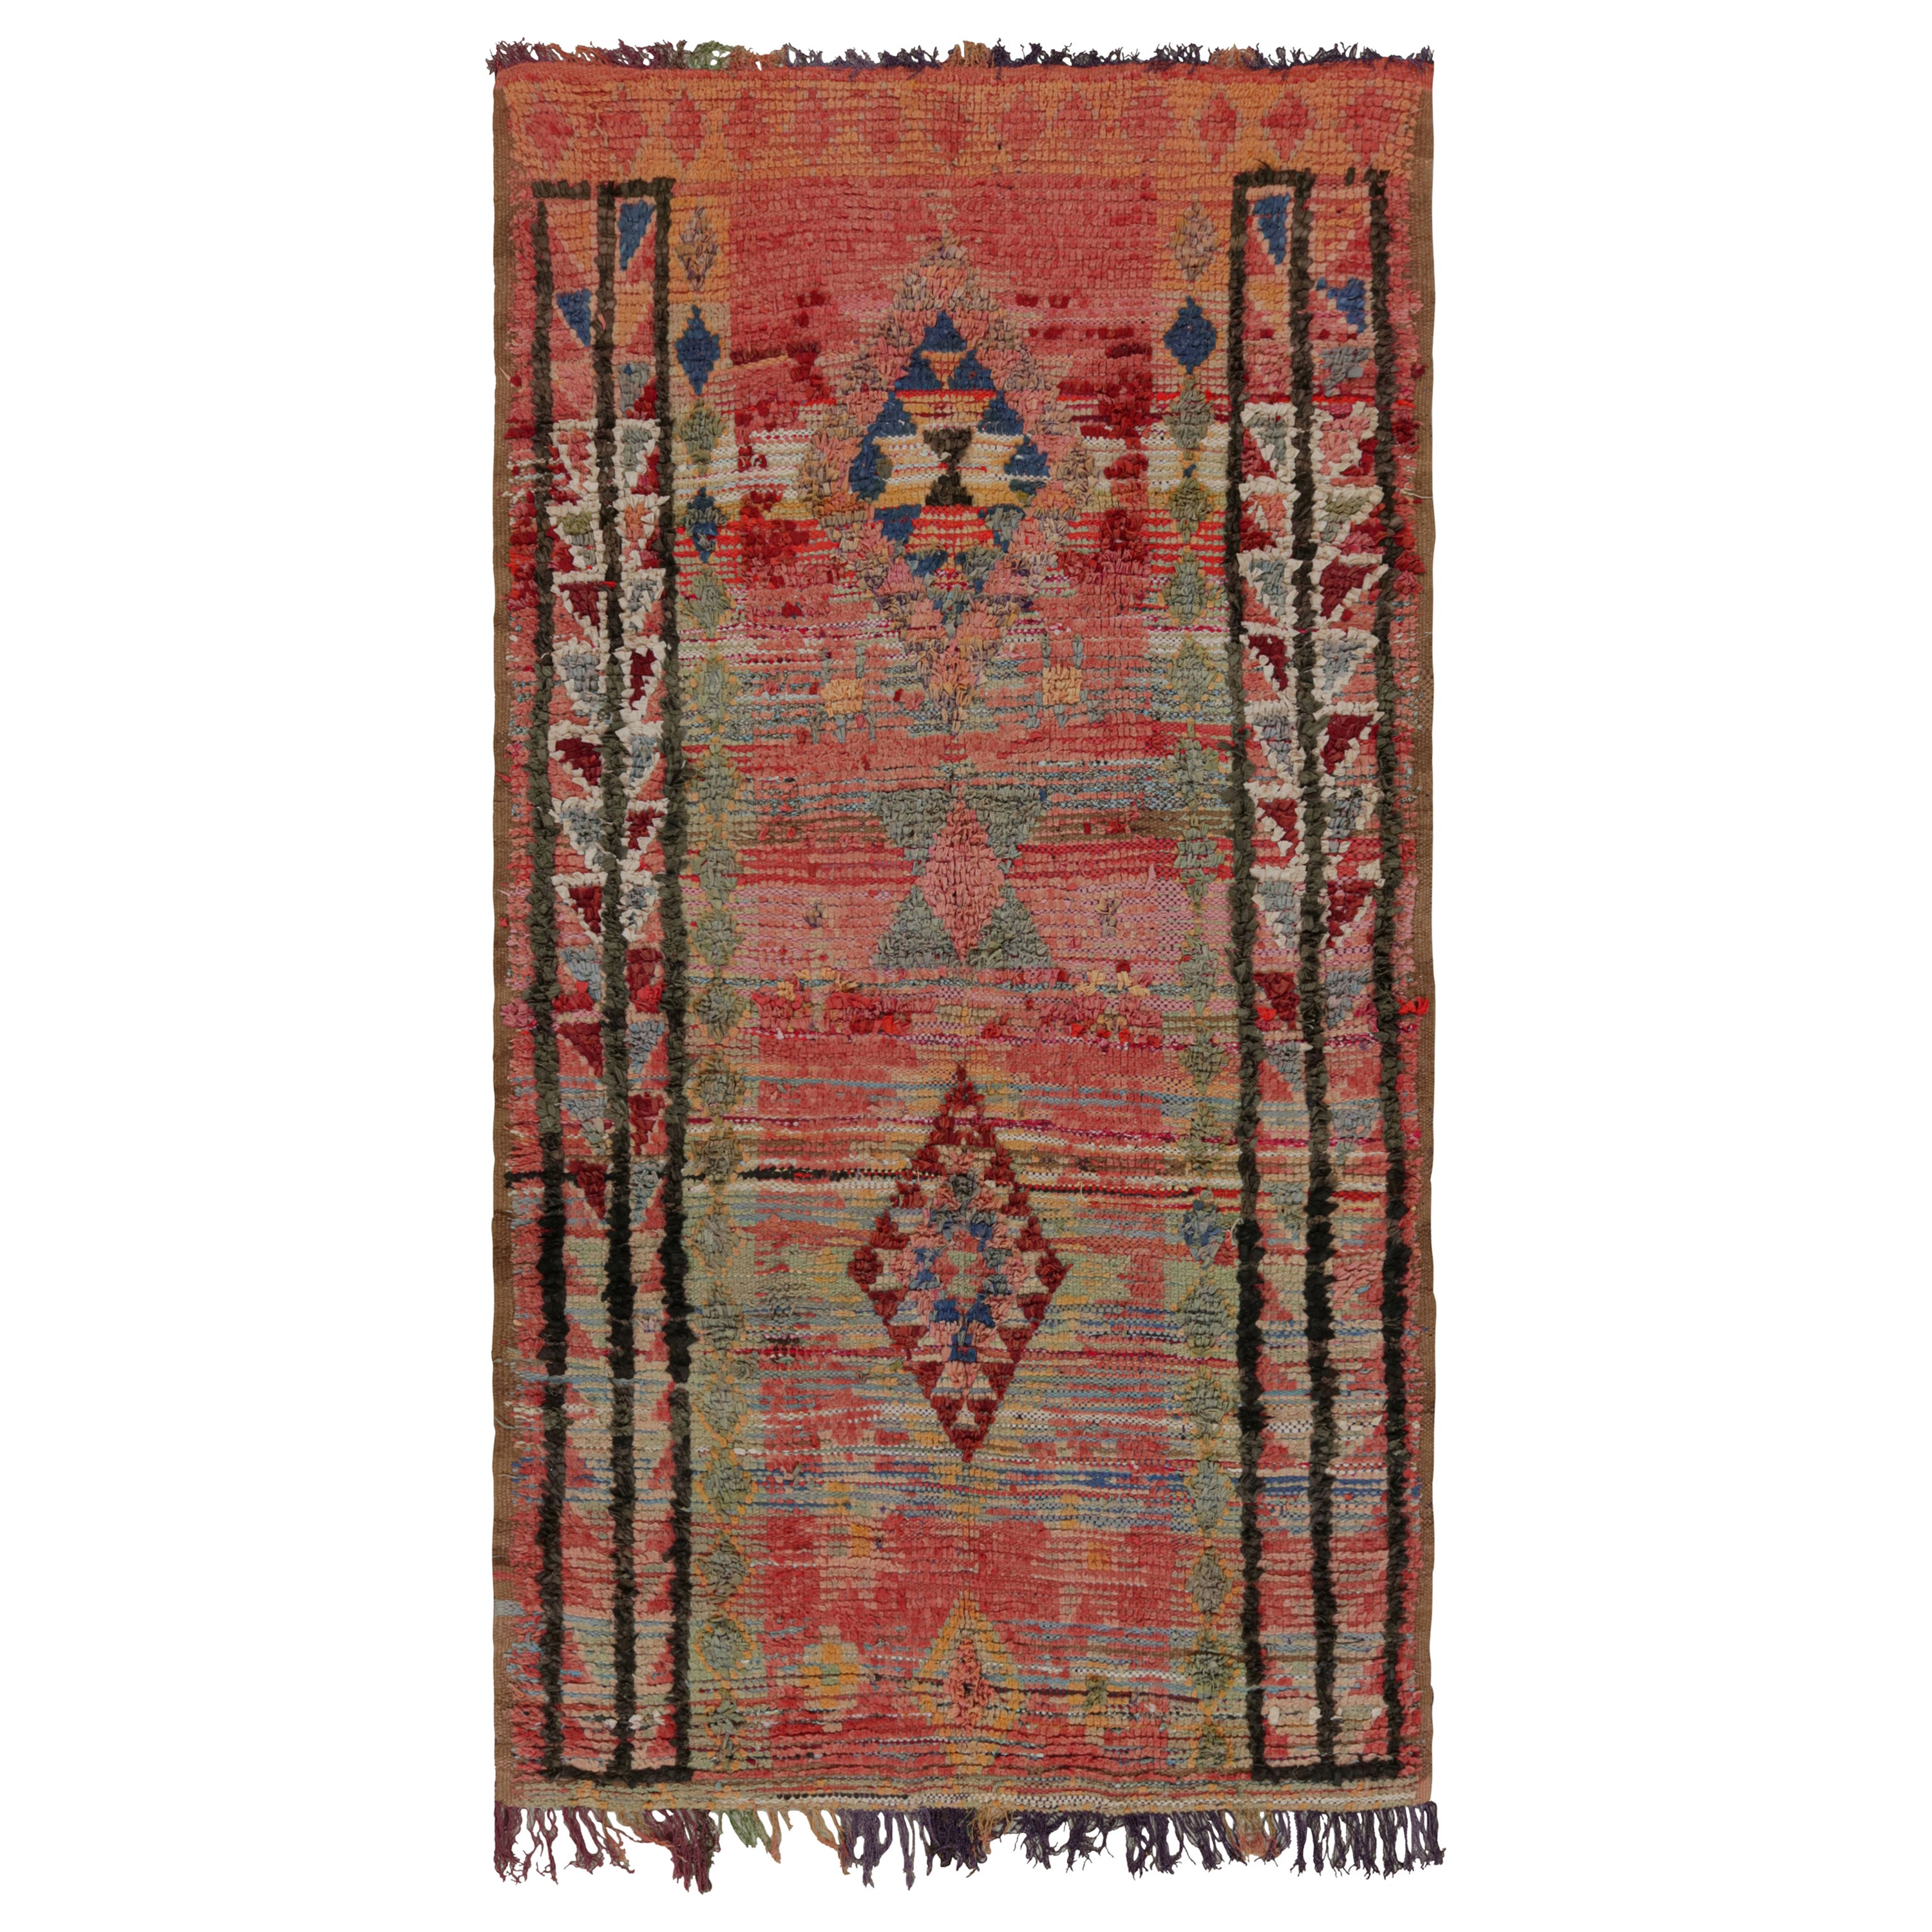 Marokkanischer Vintage-Teppich in Rot mit geometrischen Mustern, von Rug & Kilim 